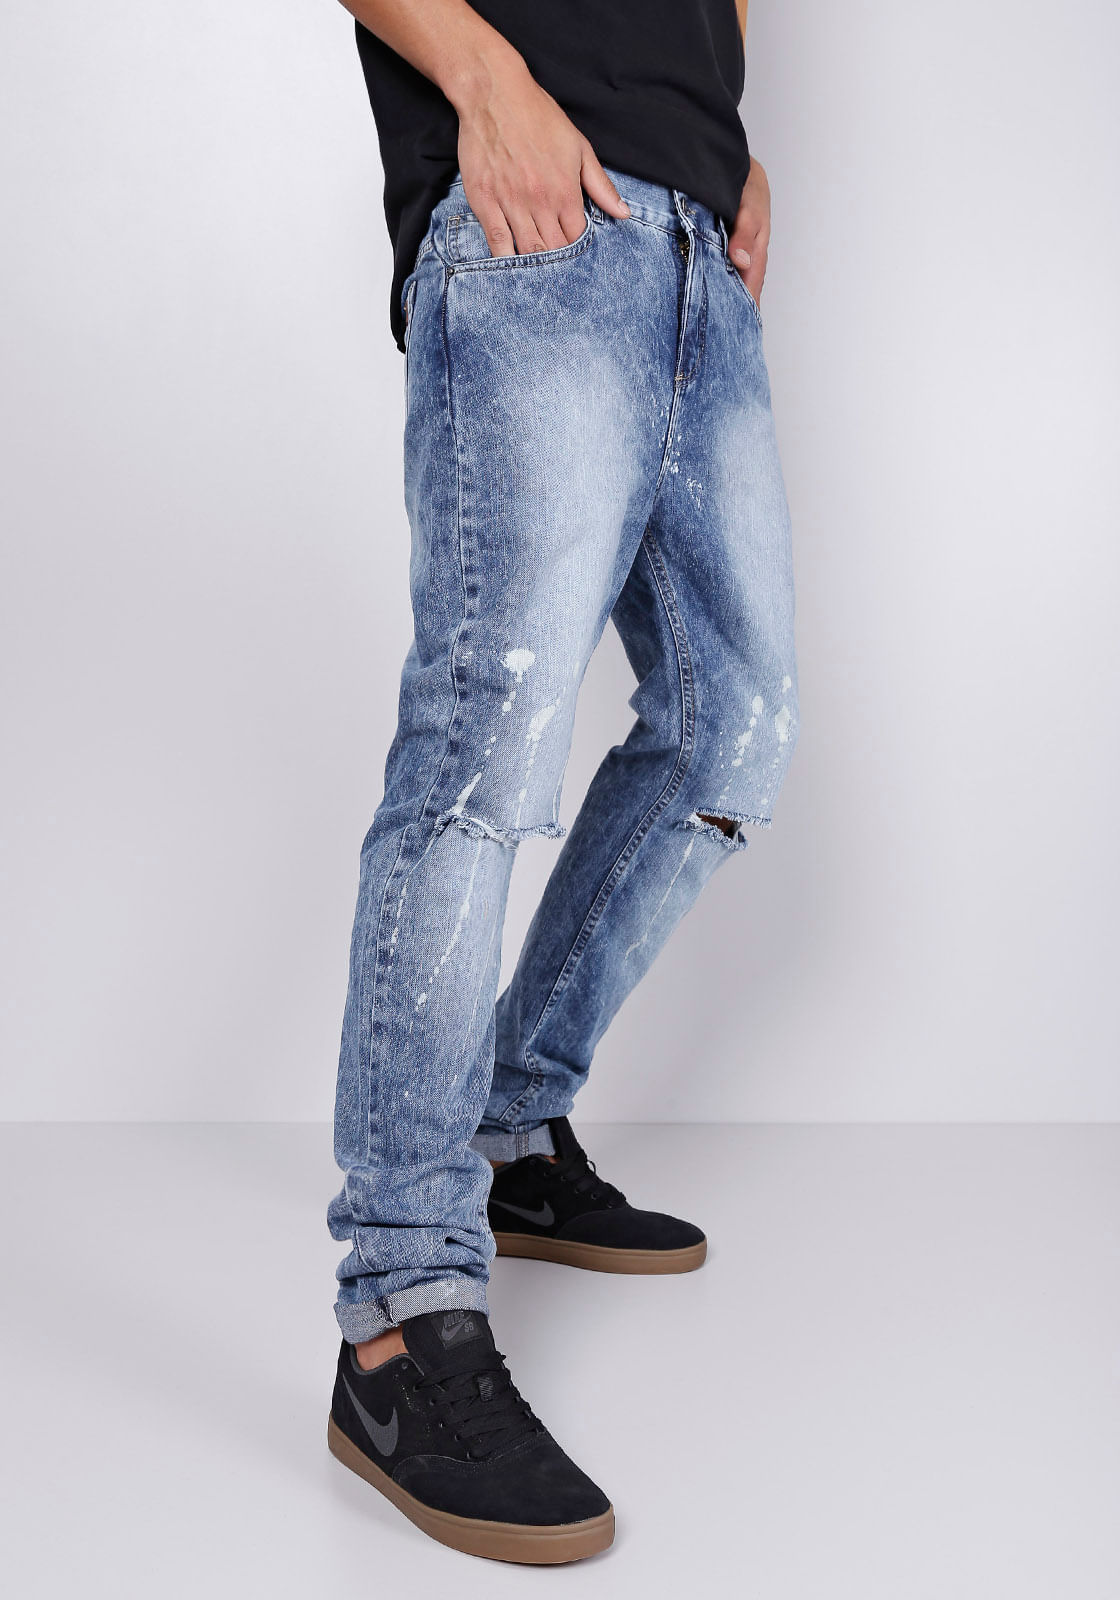 calça jeans masculina com rasgos